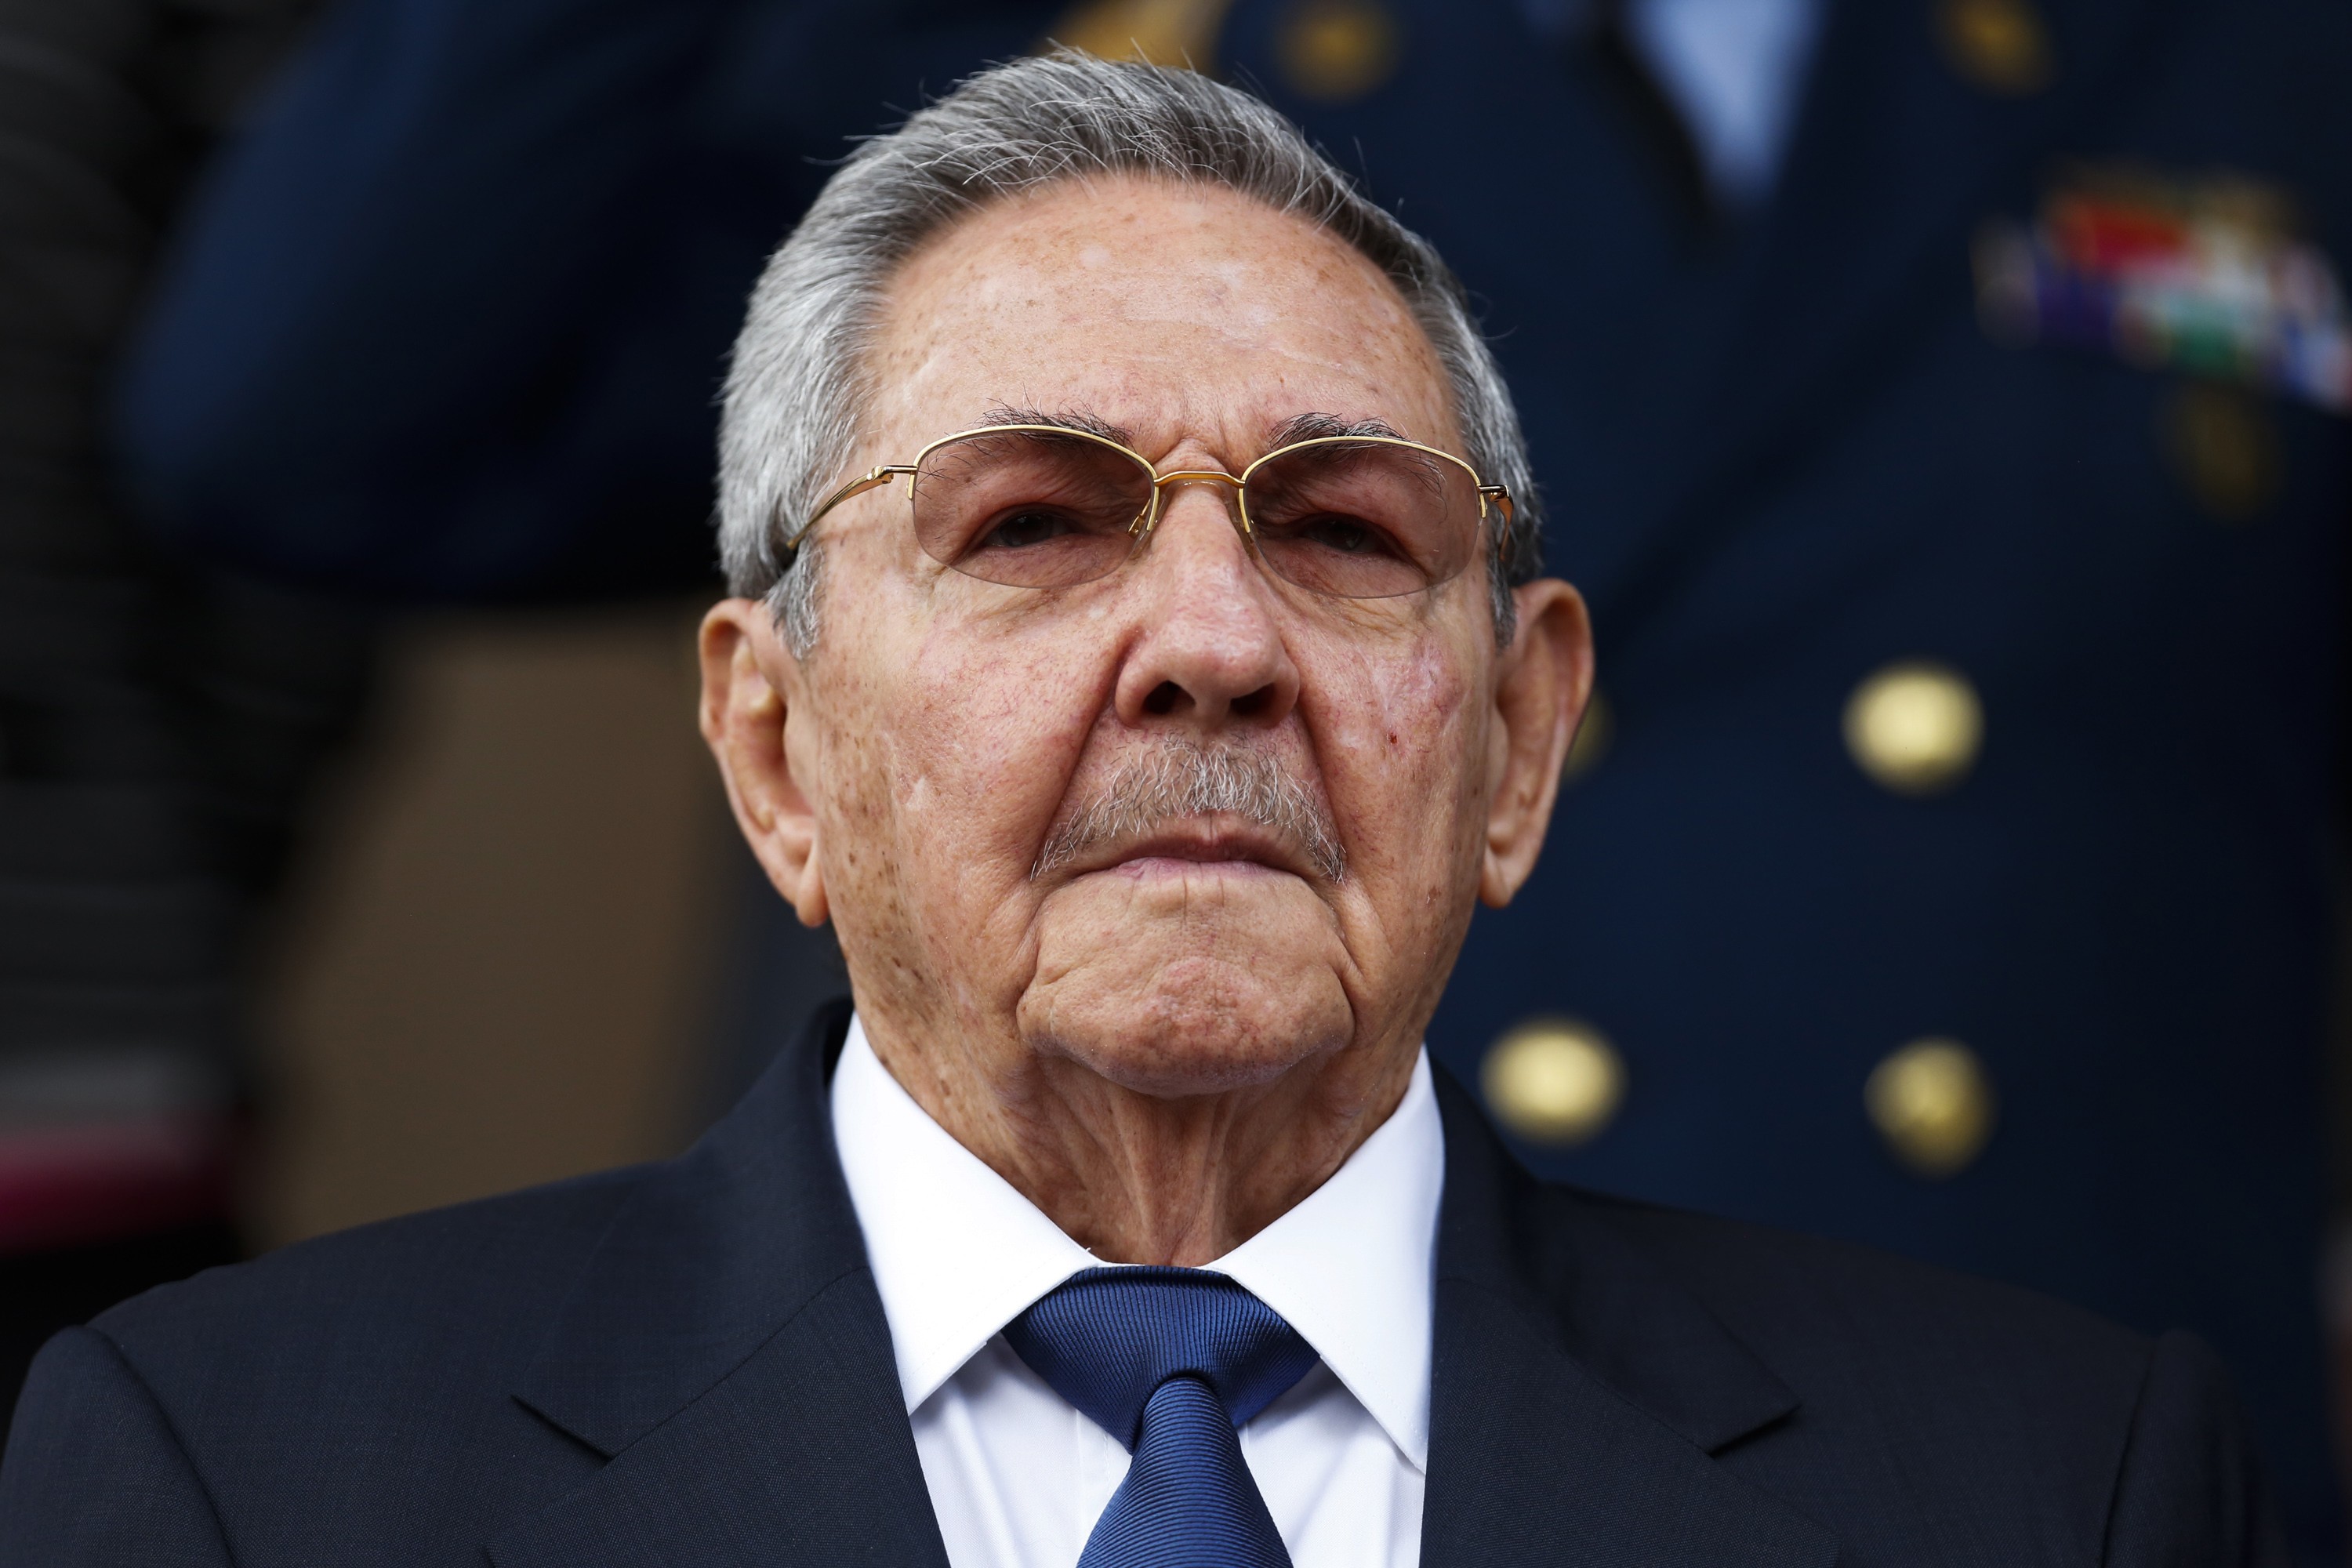 Castro confirma decisión de restablecer relaciones diplomáticas con EEUU (Carta)